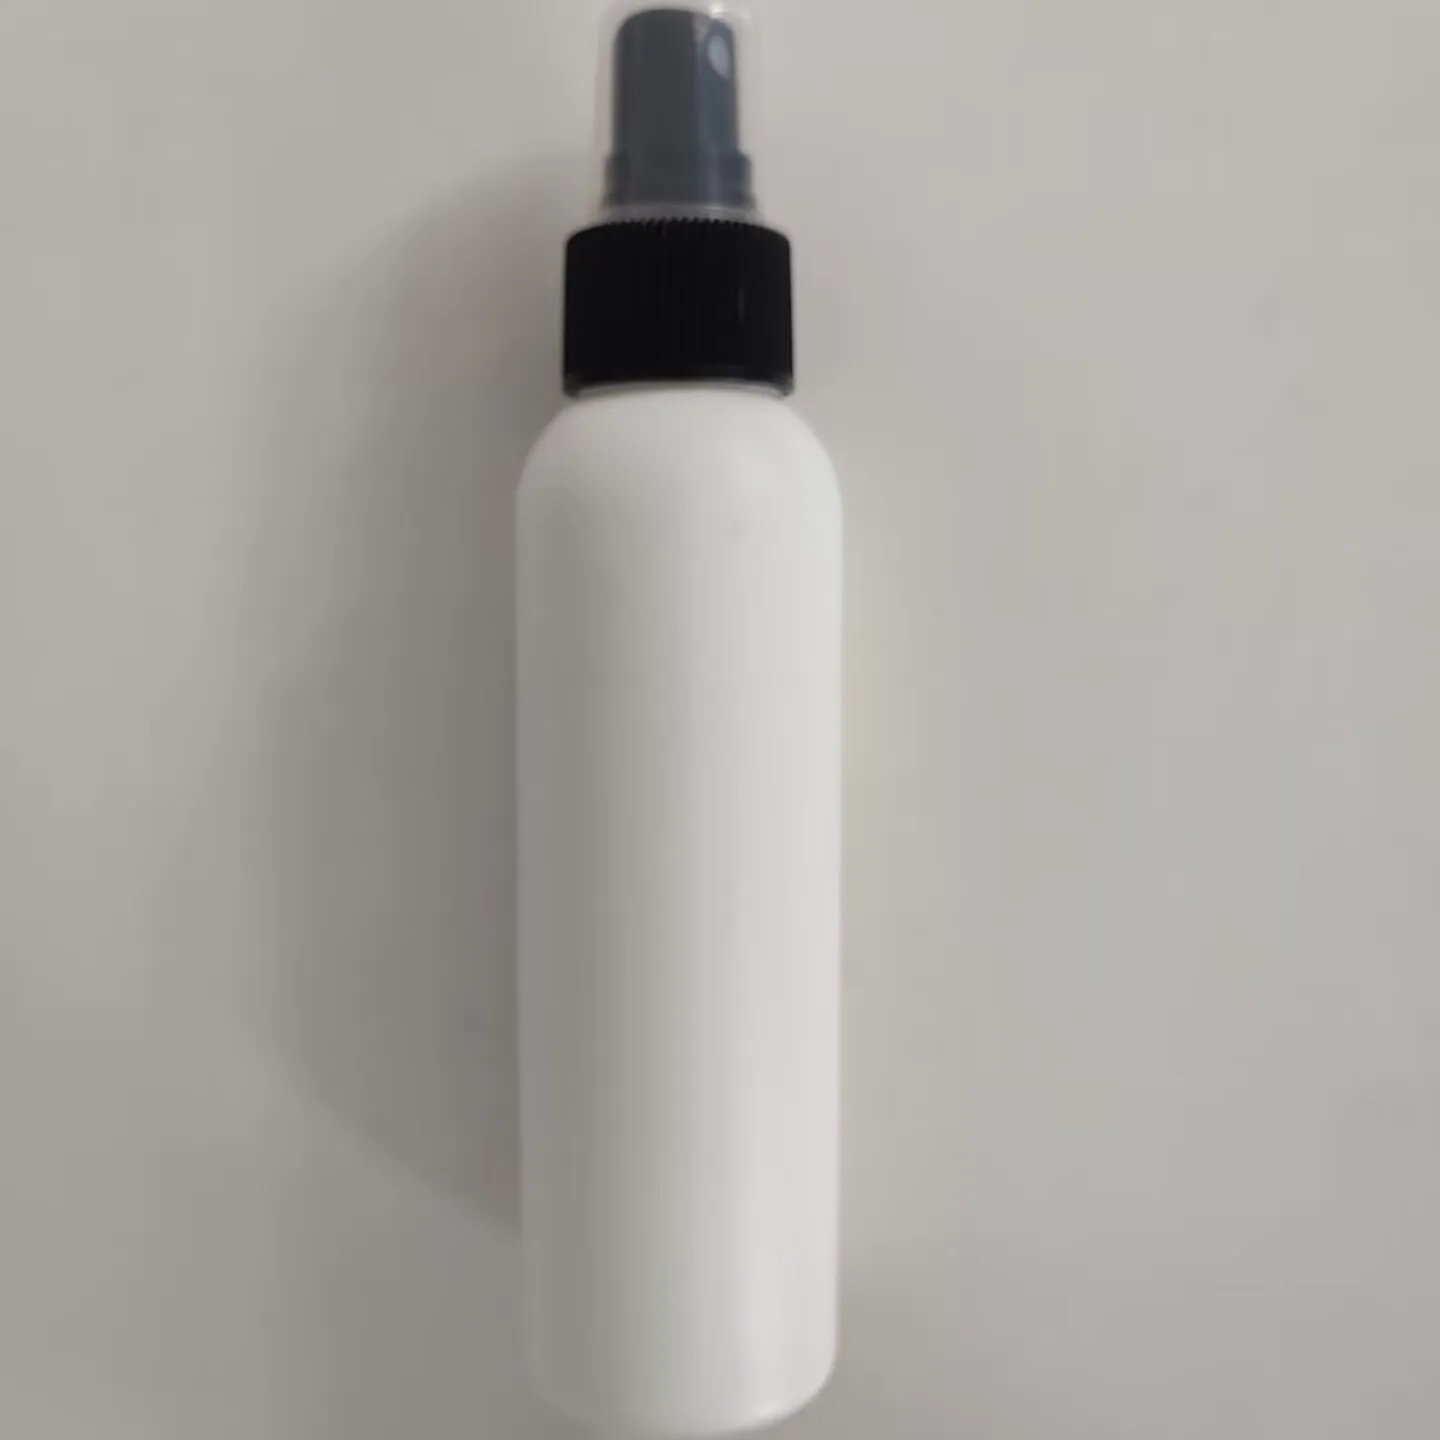 4oz Cosmo forma redonda garrafas soft touch garrafas garrafas plásticas HDPE para shampoo condicionador